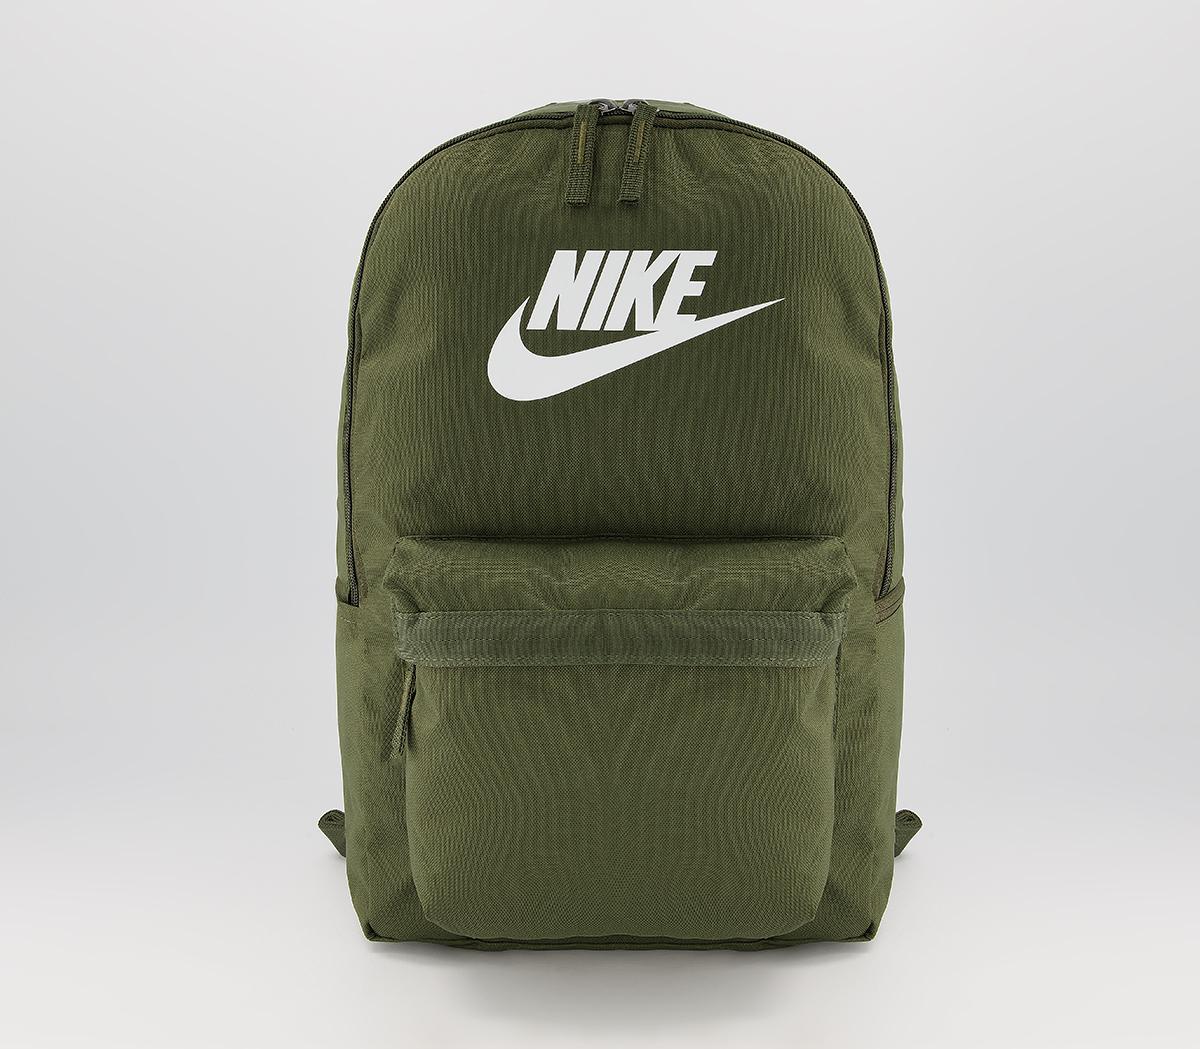 NikeHeritage BackpackCargo Khaki